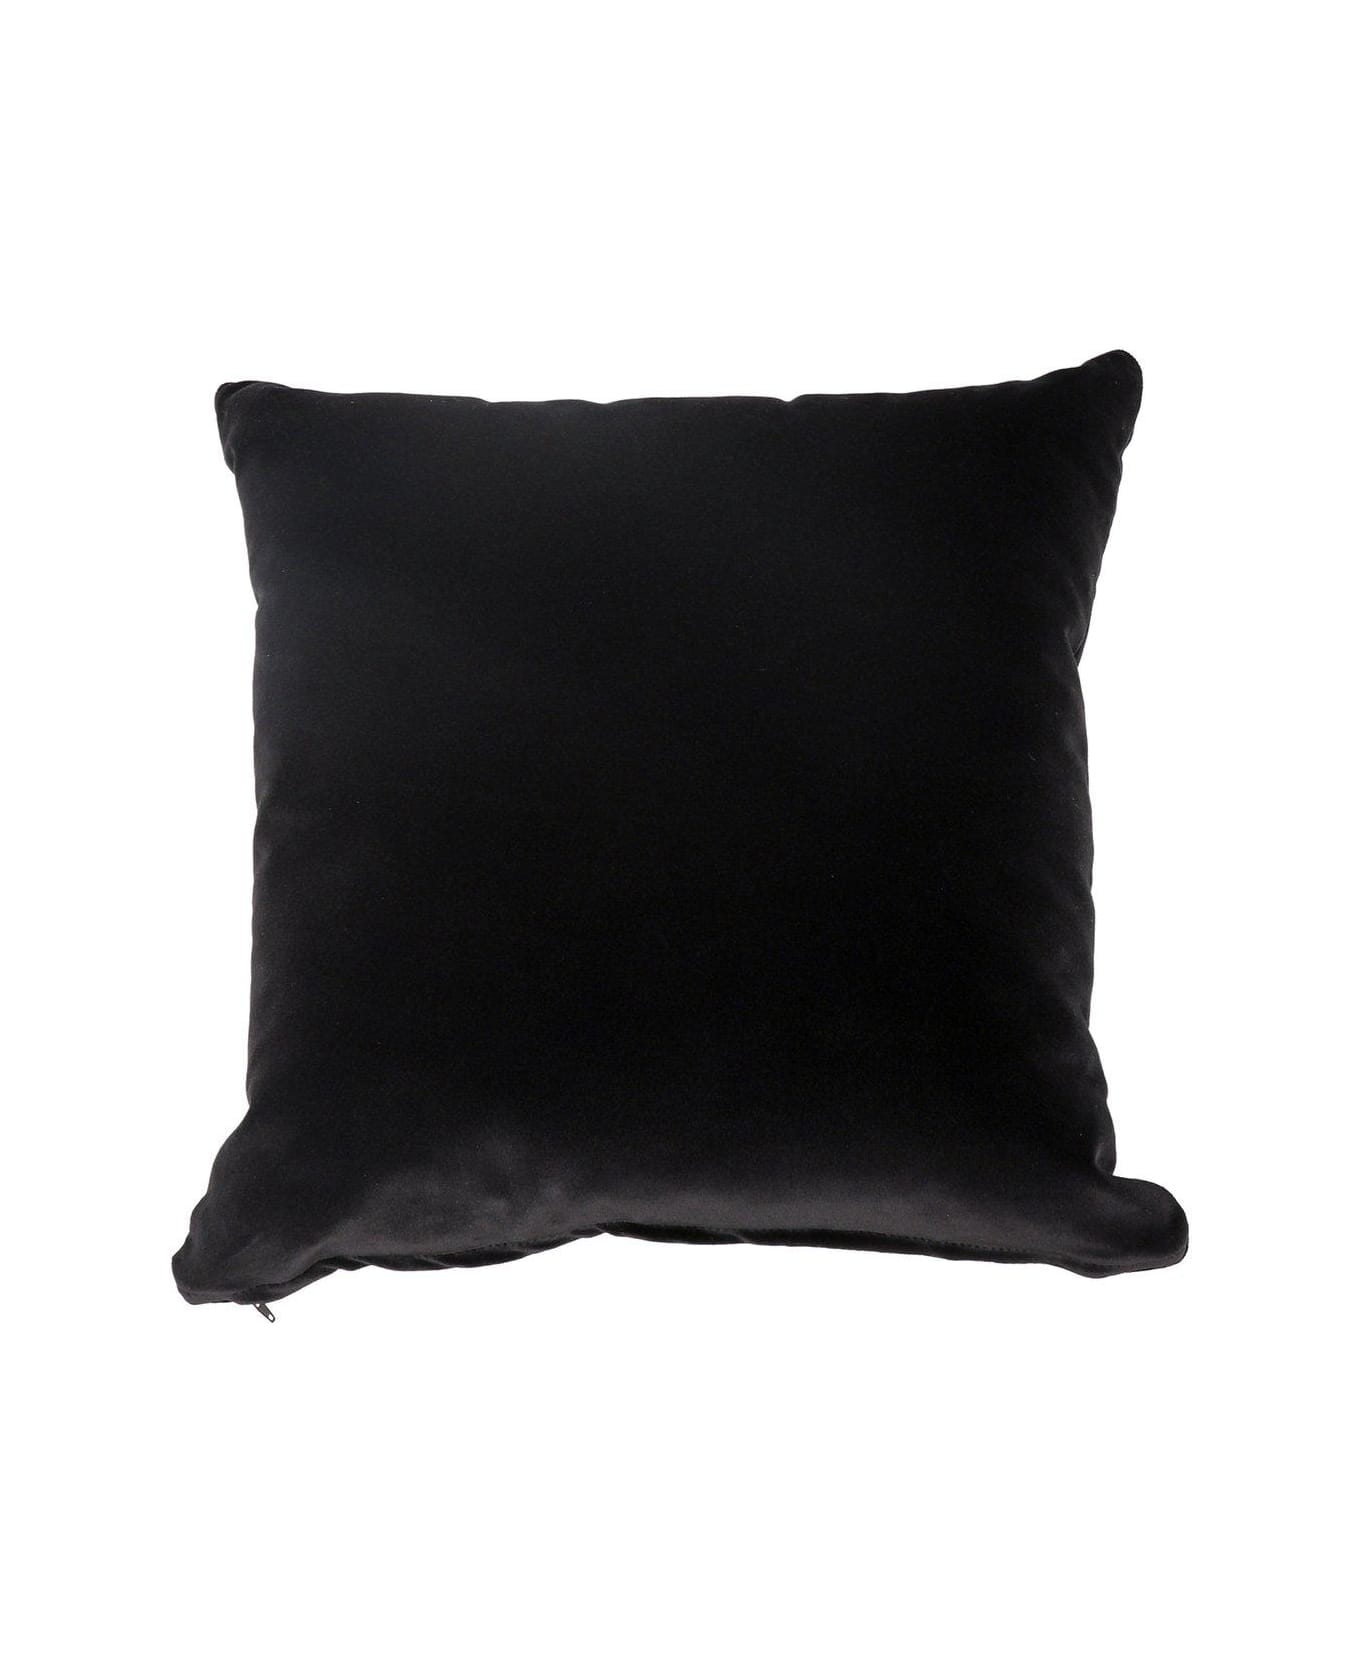 Versace Medusa Embellished Cushion - BLACK/GOLD